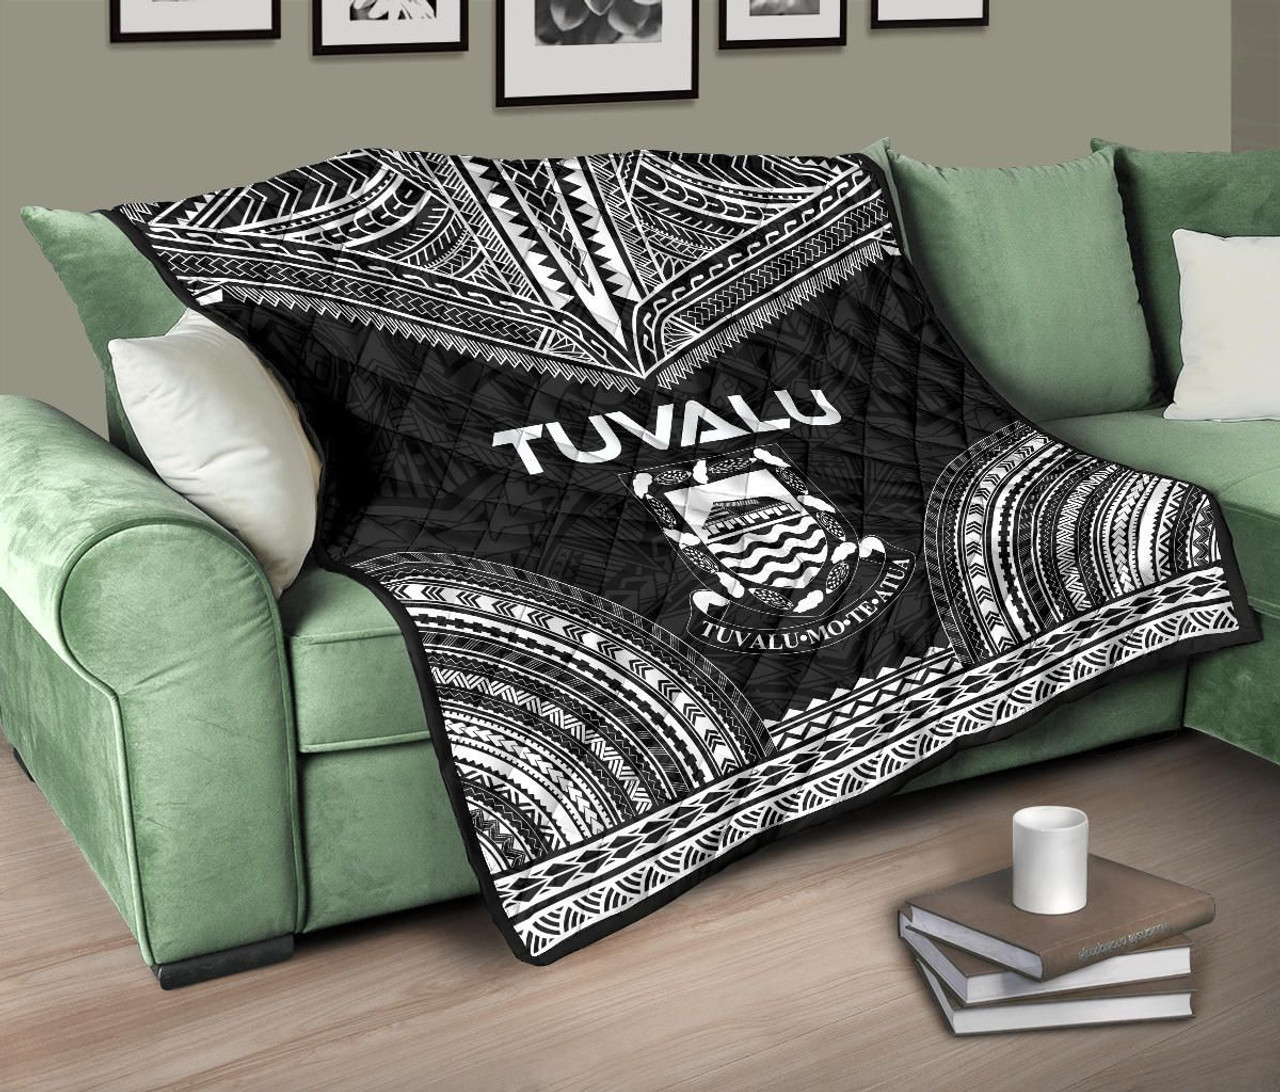 Tuvalu Premium Quilt - Tuvalu Coat Of Arms Polynesian Chief Black Version 10